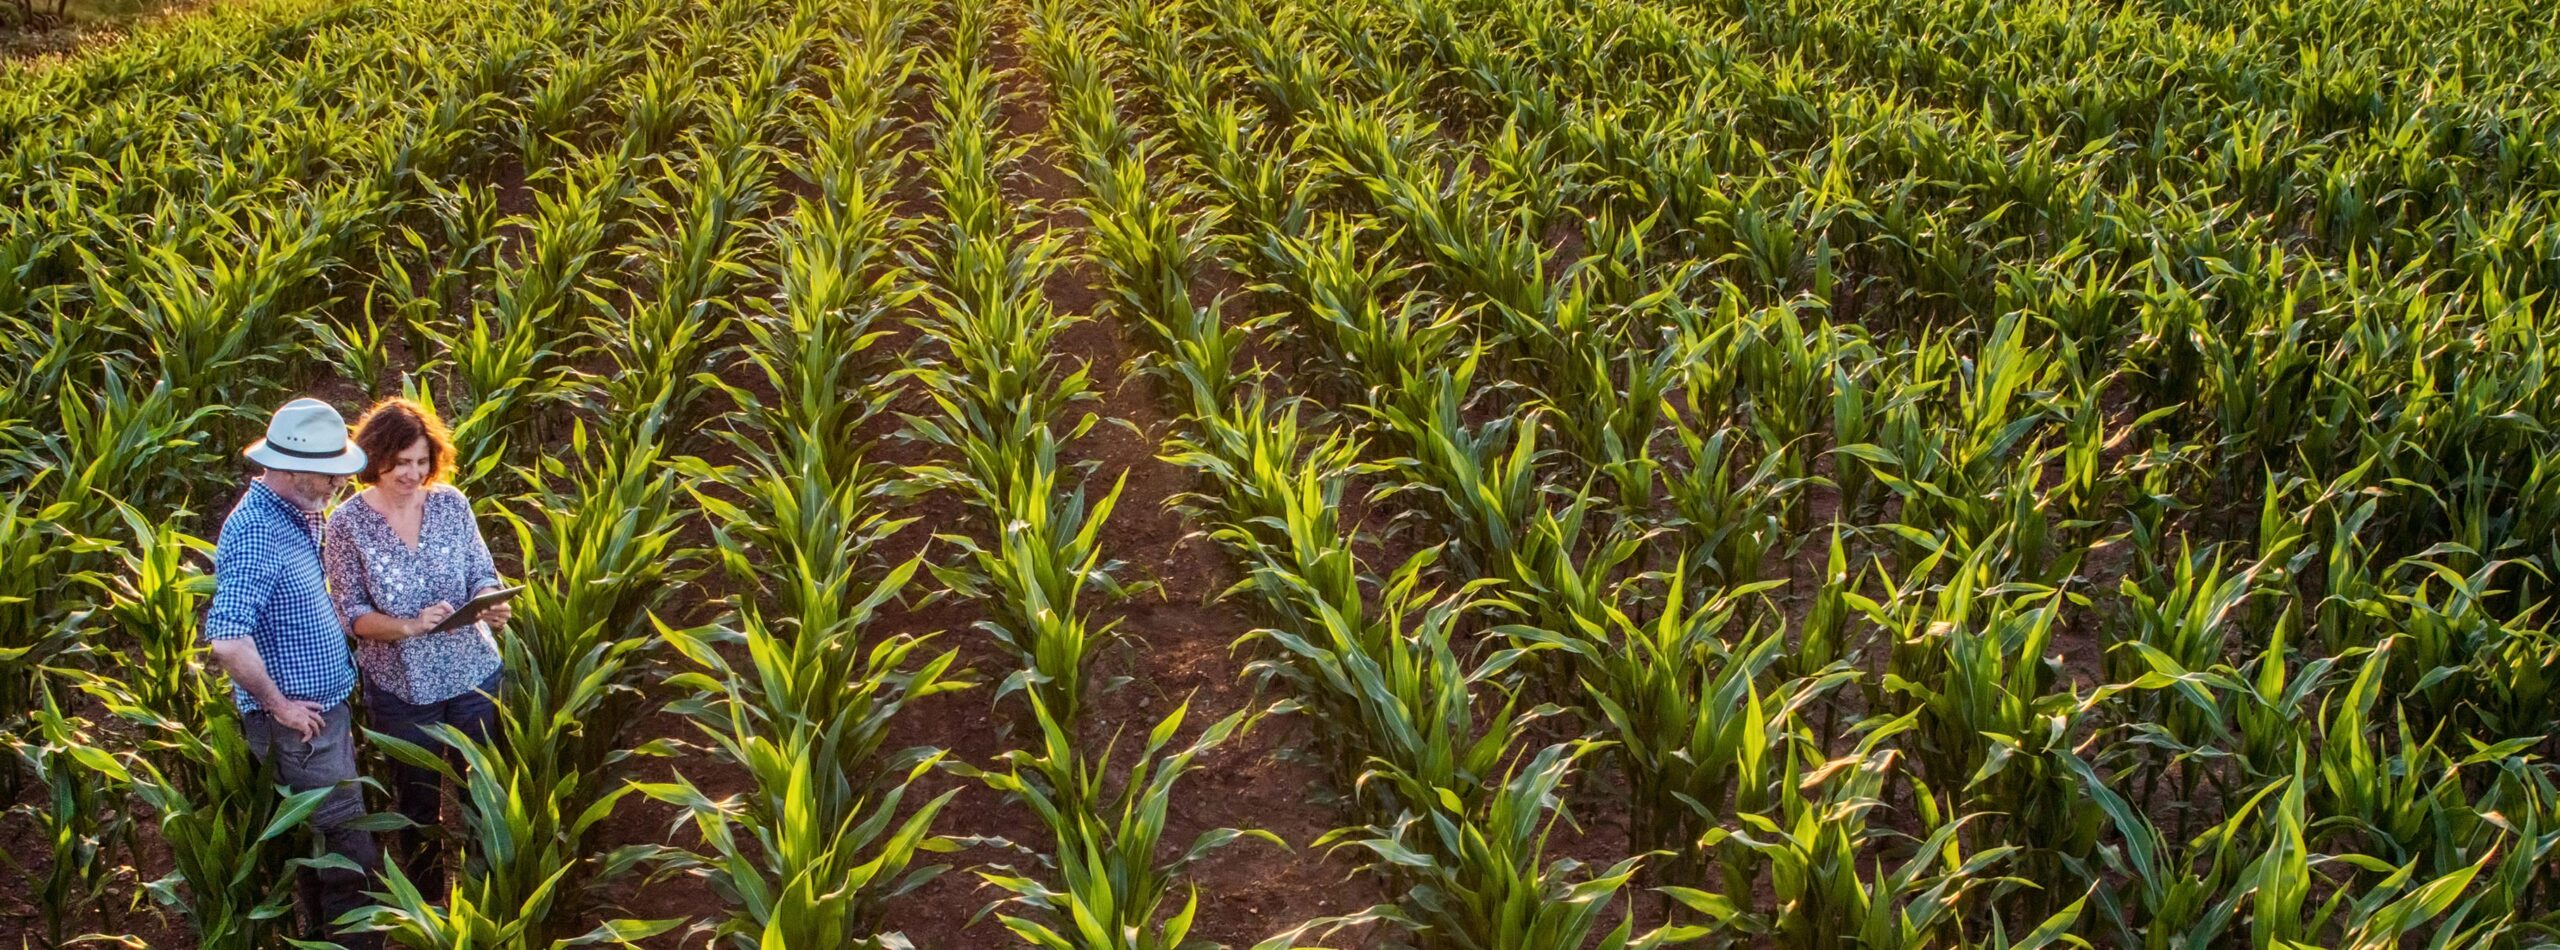 farmers in corn field